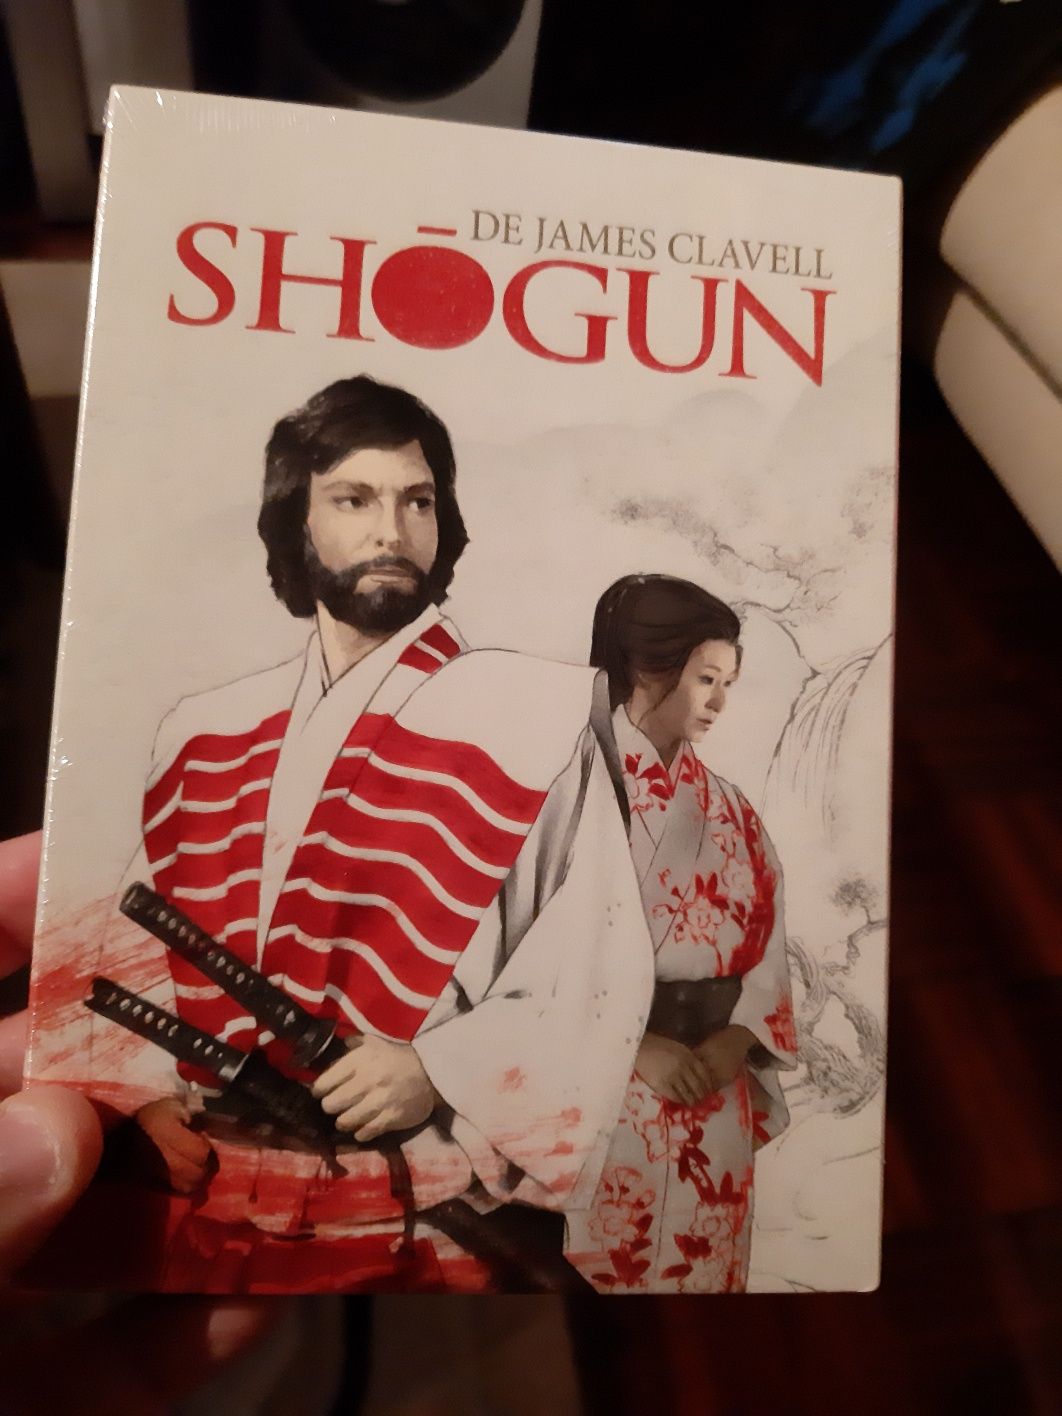 Serie shogun ainda lacrada